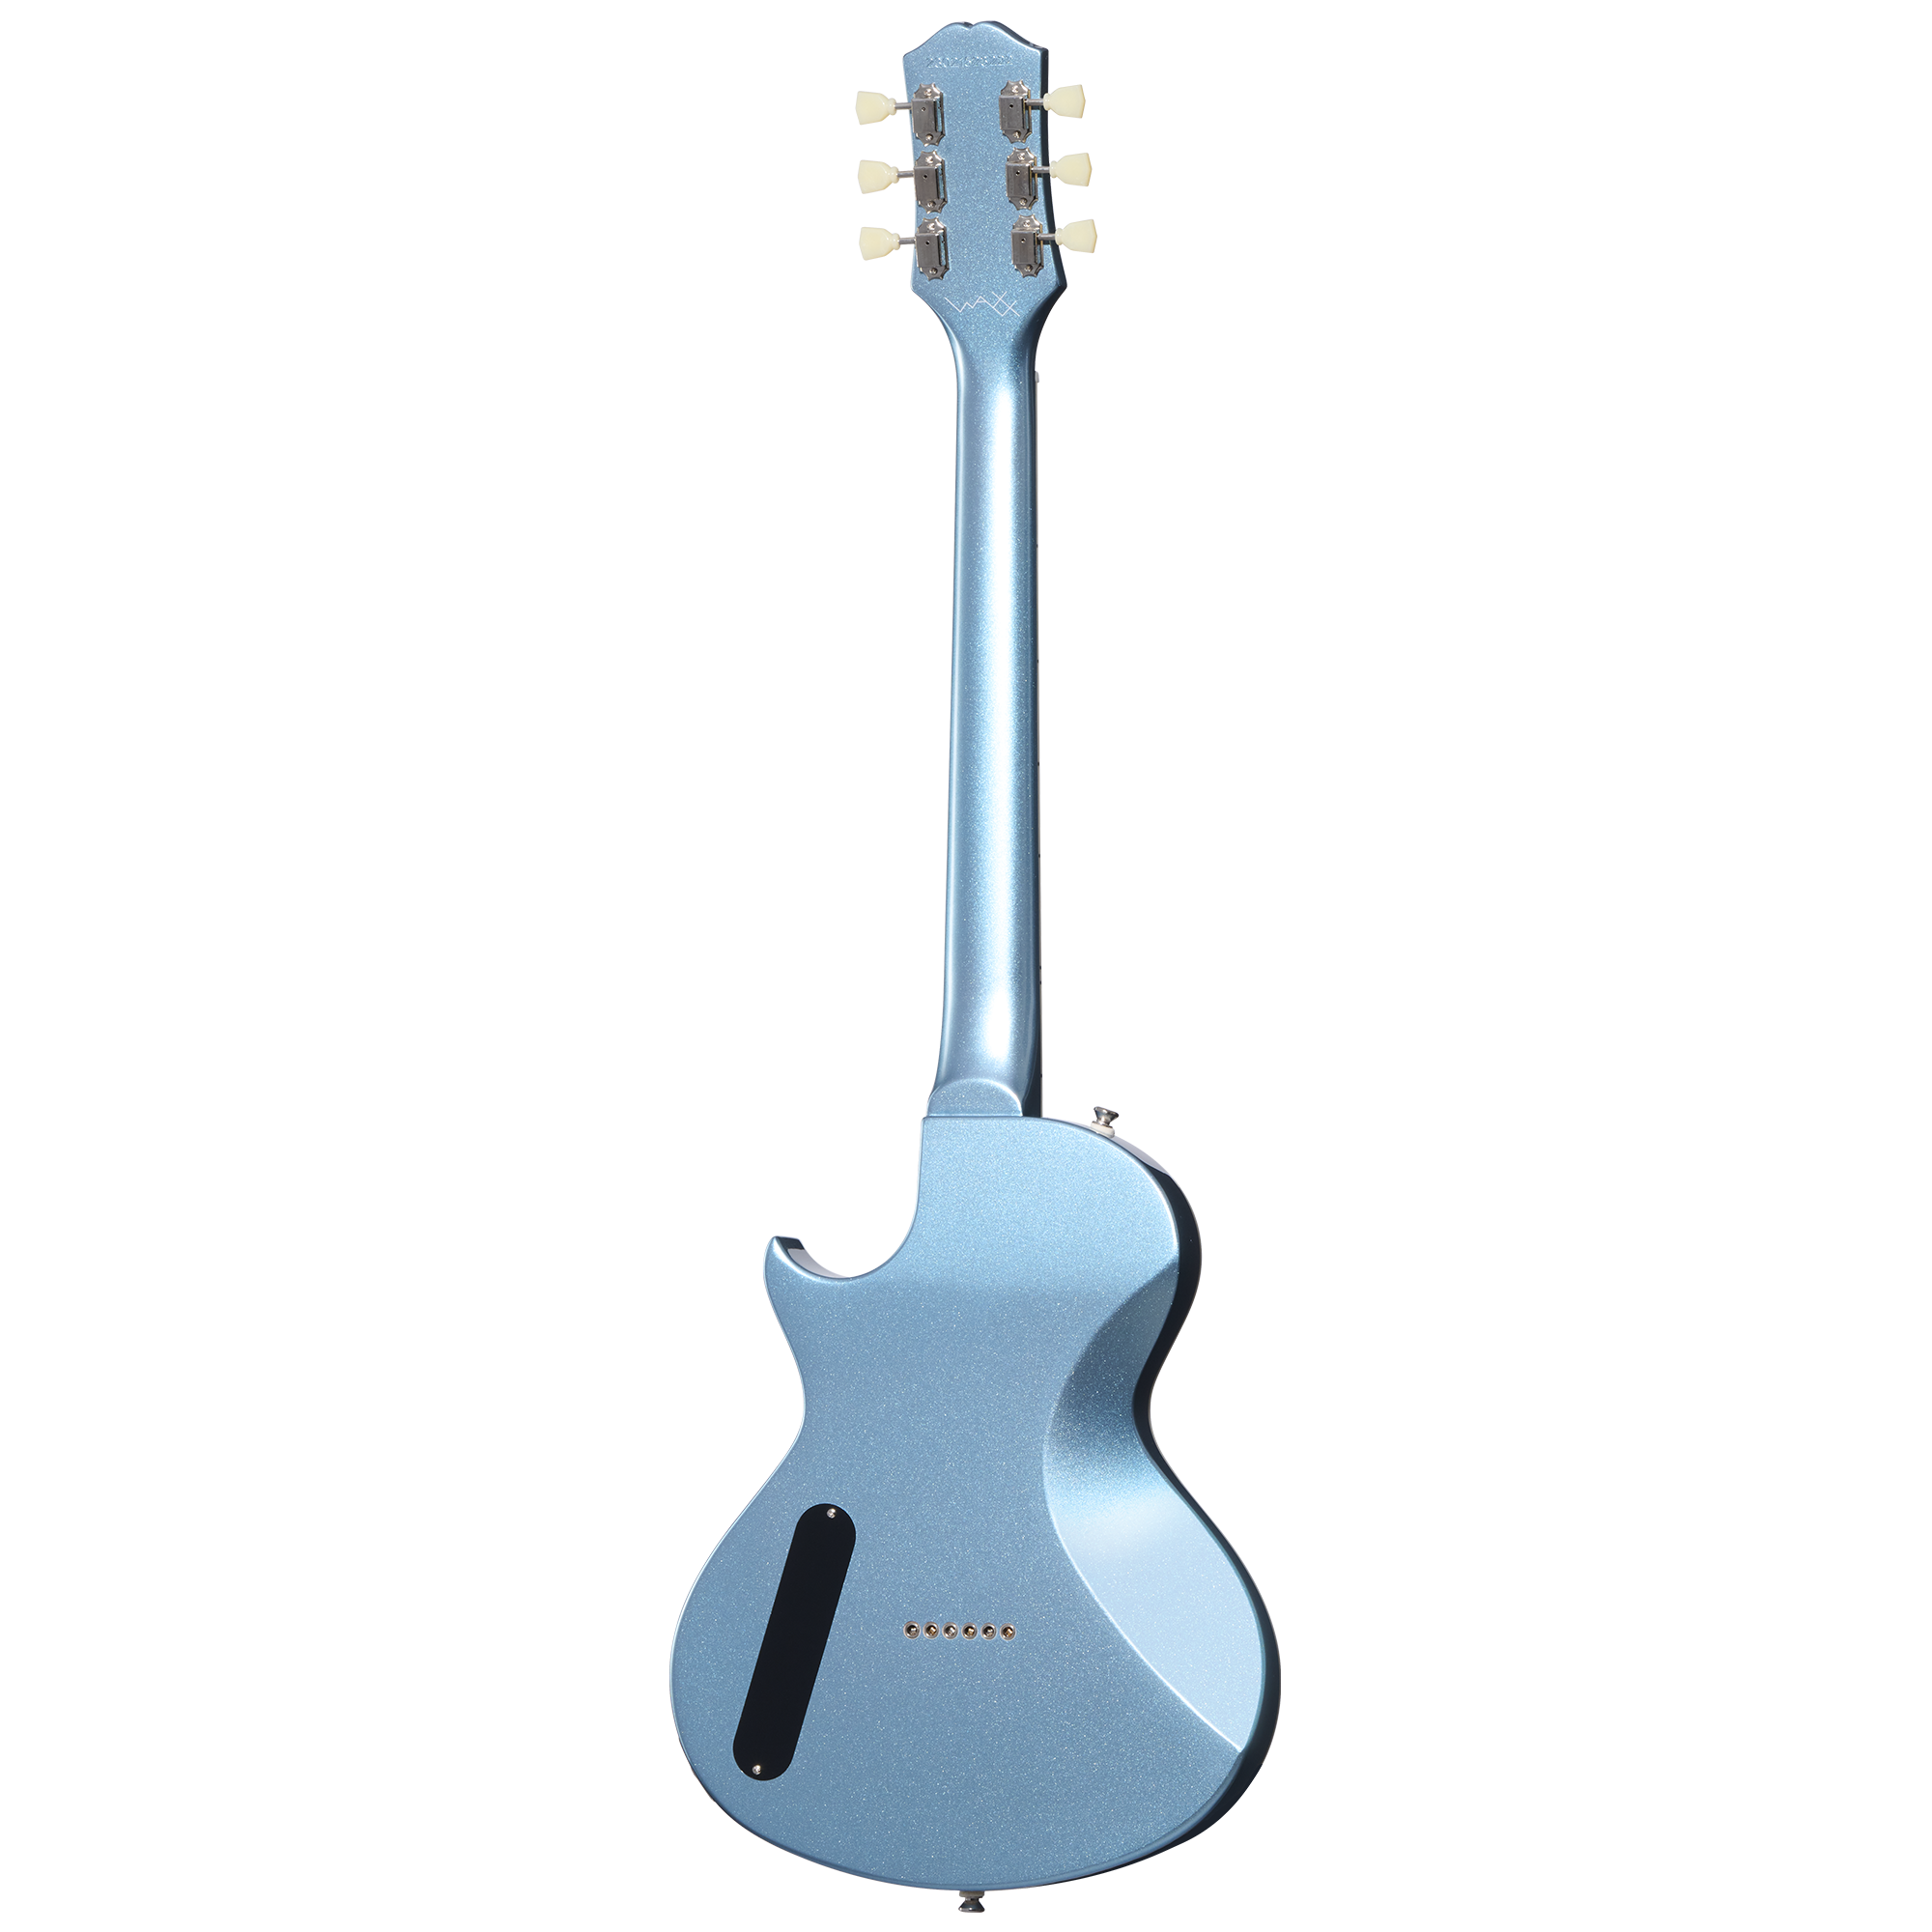 Epiphone Nighthawk Studio Waxx Hh Ht Lau - Pelham Blue - Enkel gesneden elektrische gitaar - Variation 1